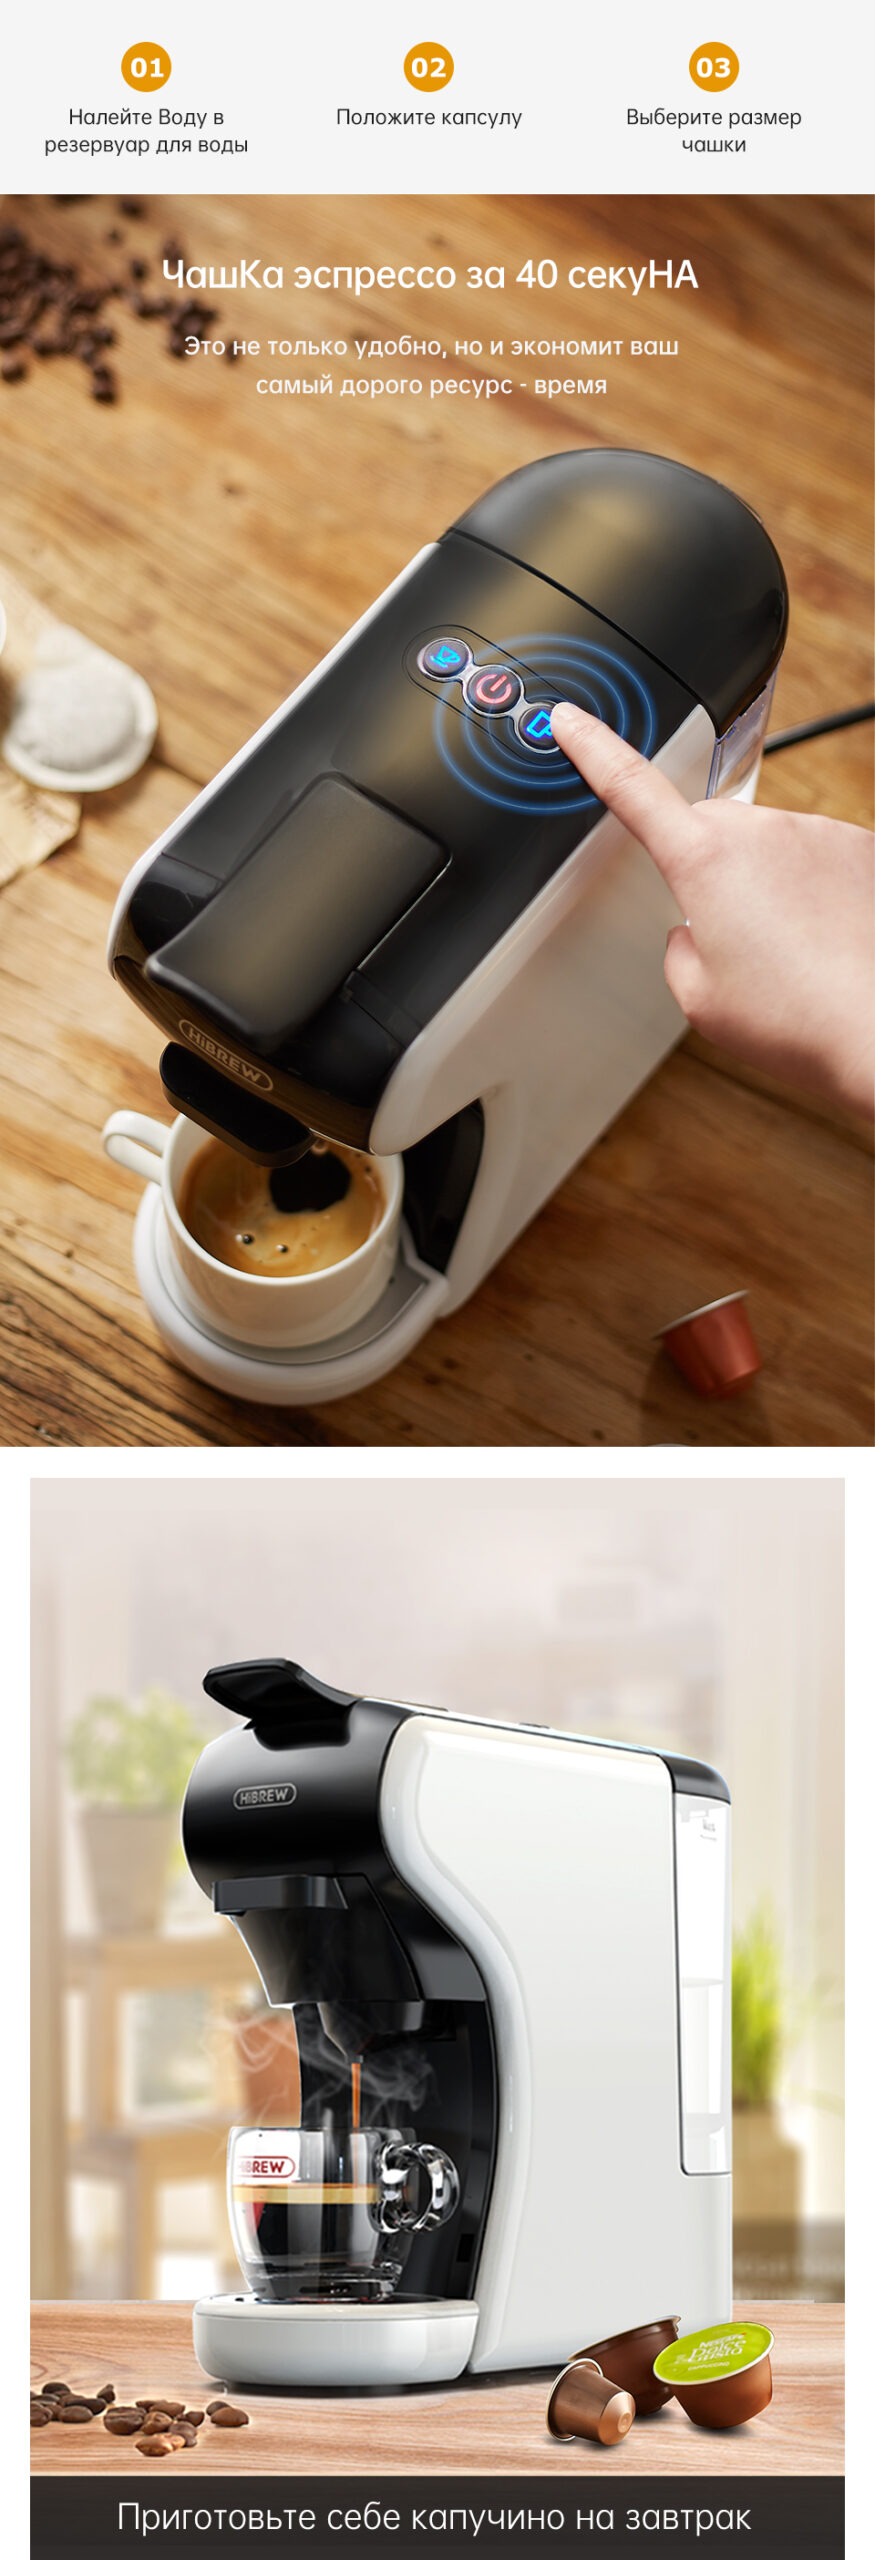 Кофеварка HiBREW 4 в 1 в несколько капсул, полностью автоматическая, с горячей и холодной детской кофеваркой, набор из вспенивателя и пластикового лотка